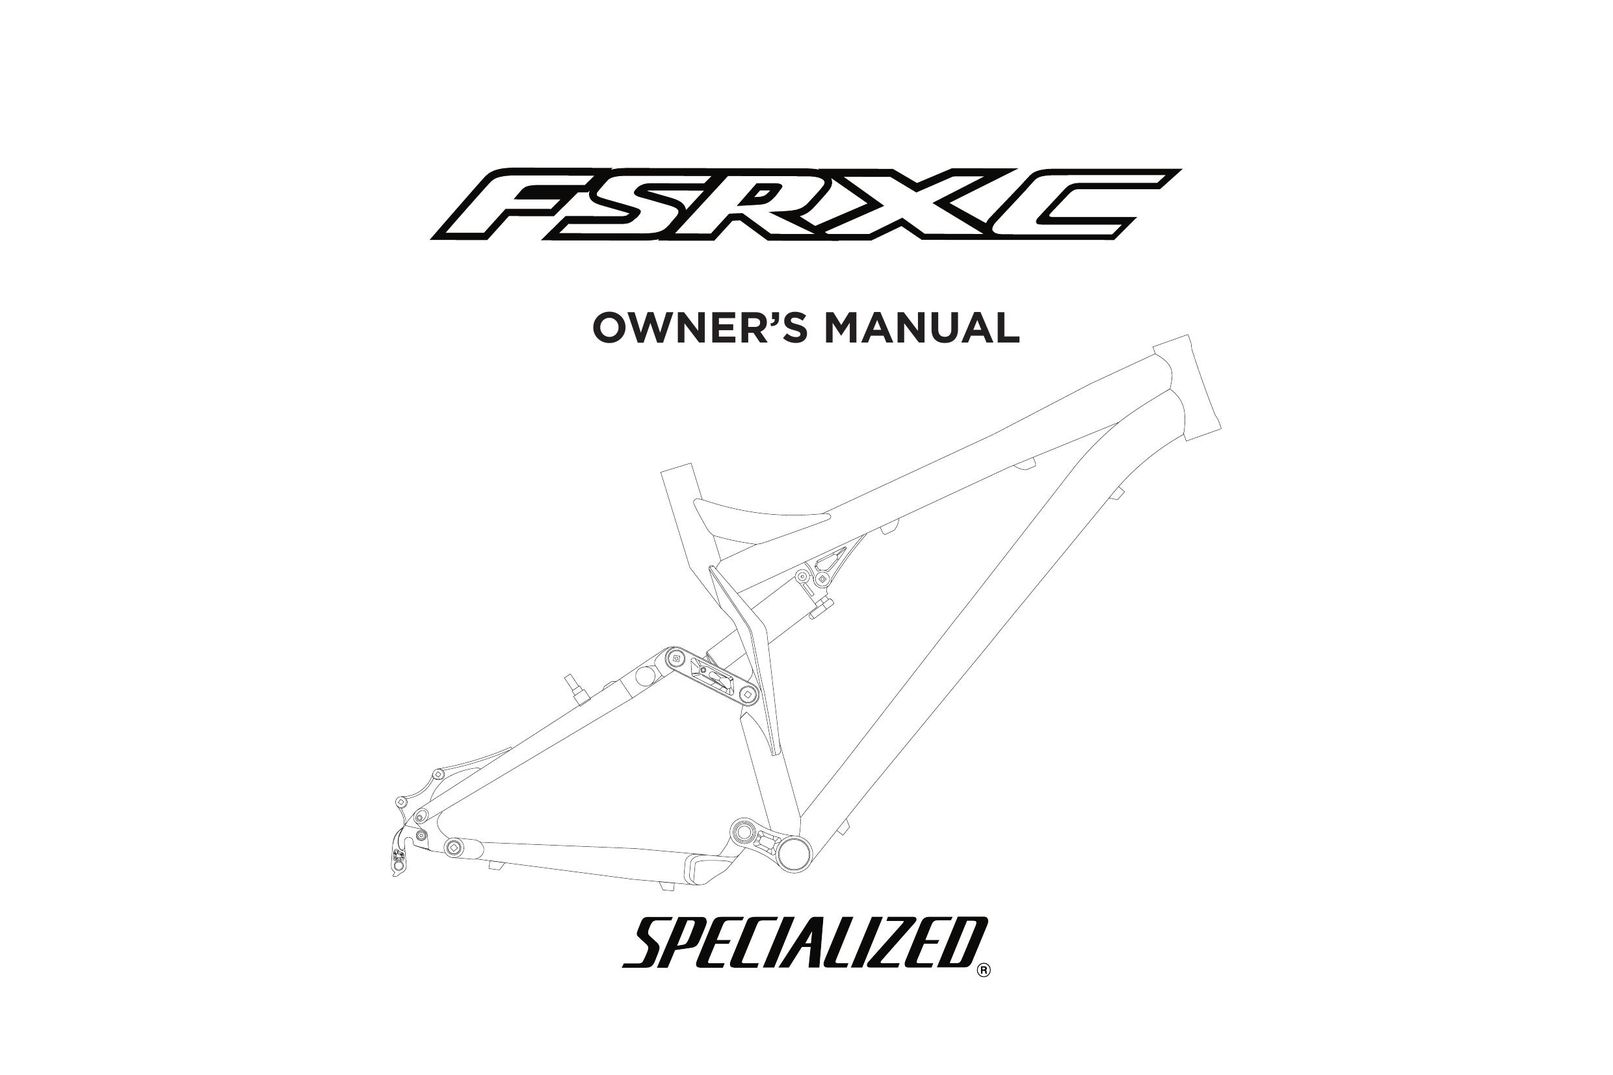 Specialized FSRXC Home Gym User Manual